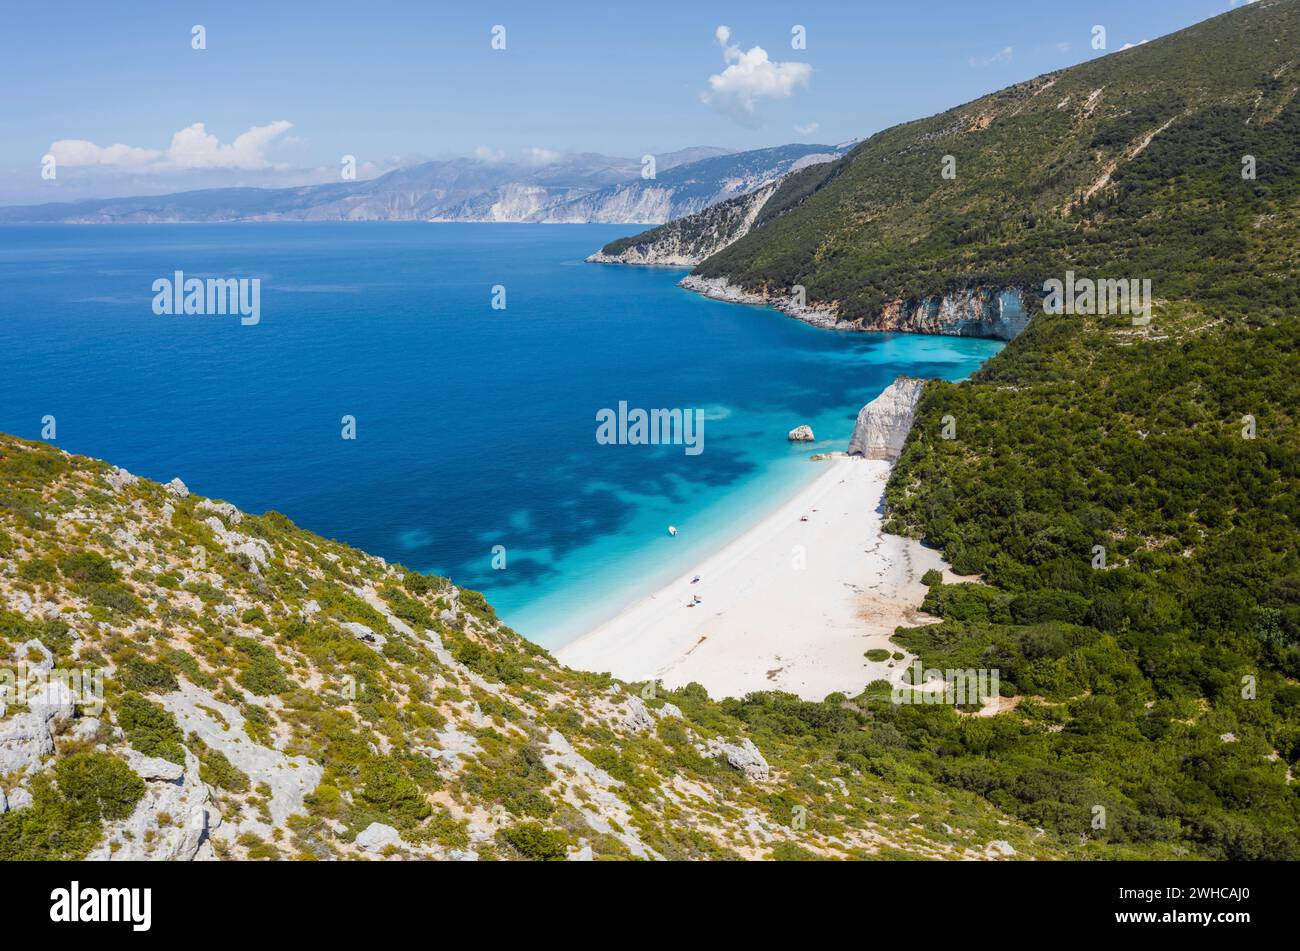 Splendida vista sulla spiaggia di Fteri con barca a vela bianca nella baia nascosta, Cefalonia, Grecia. Circondato da vegetazione mediterranea. Percorso trekking. Incredibile stagionatura. Foto Stock